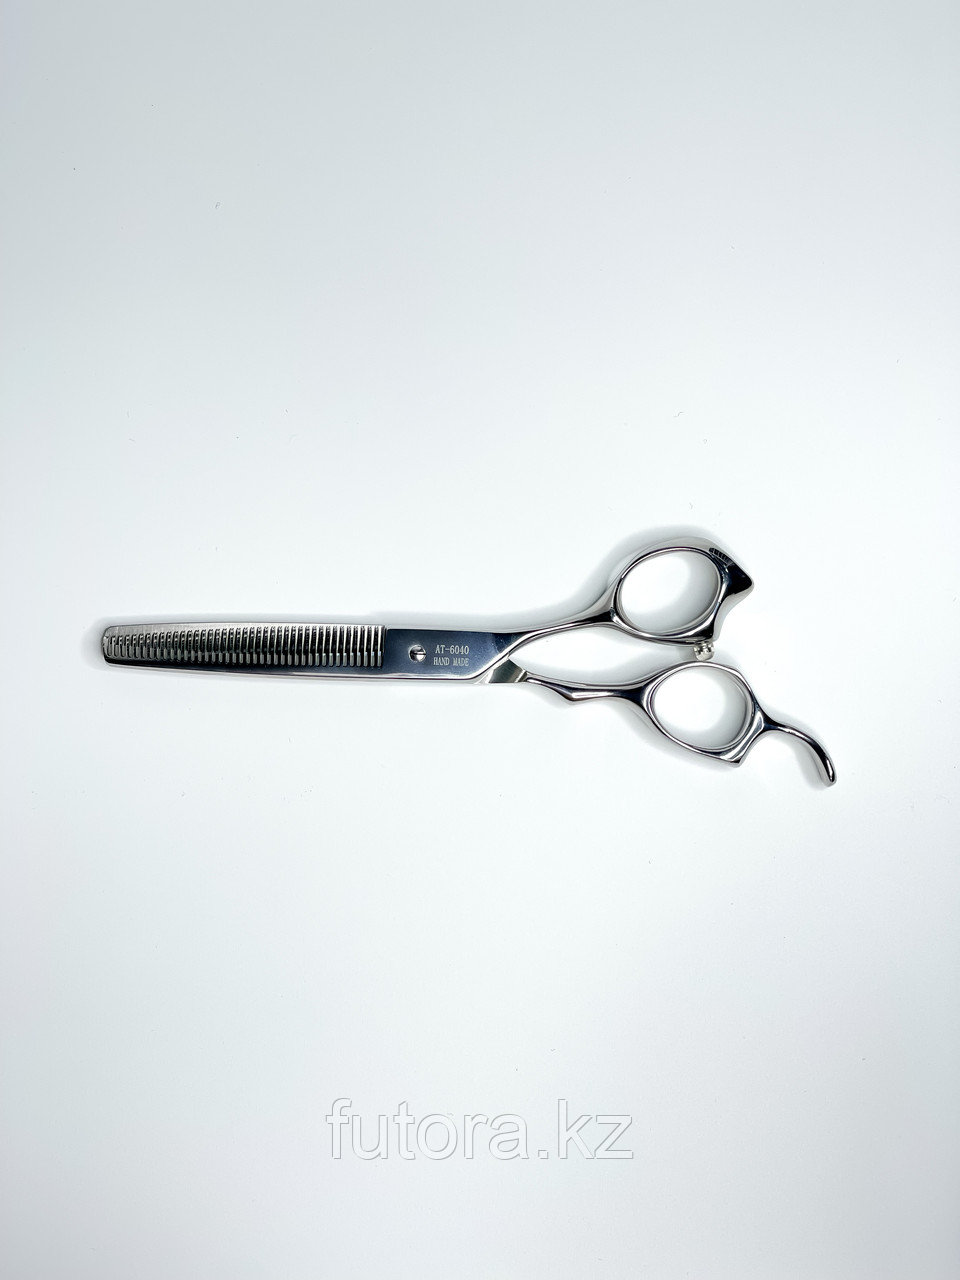 Парикмахерские ножницы для стрижки волос "Akita - AT-6040".